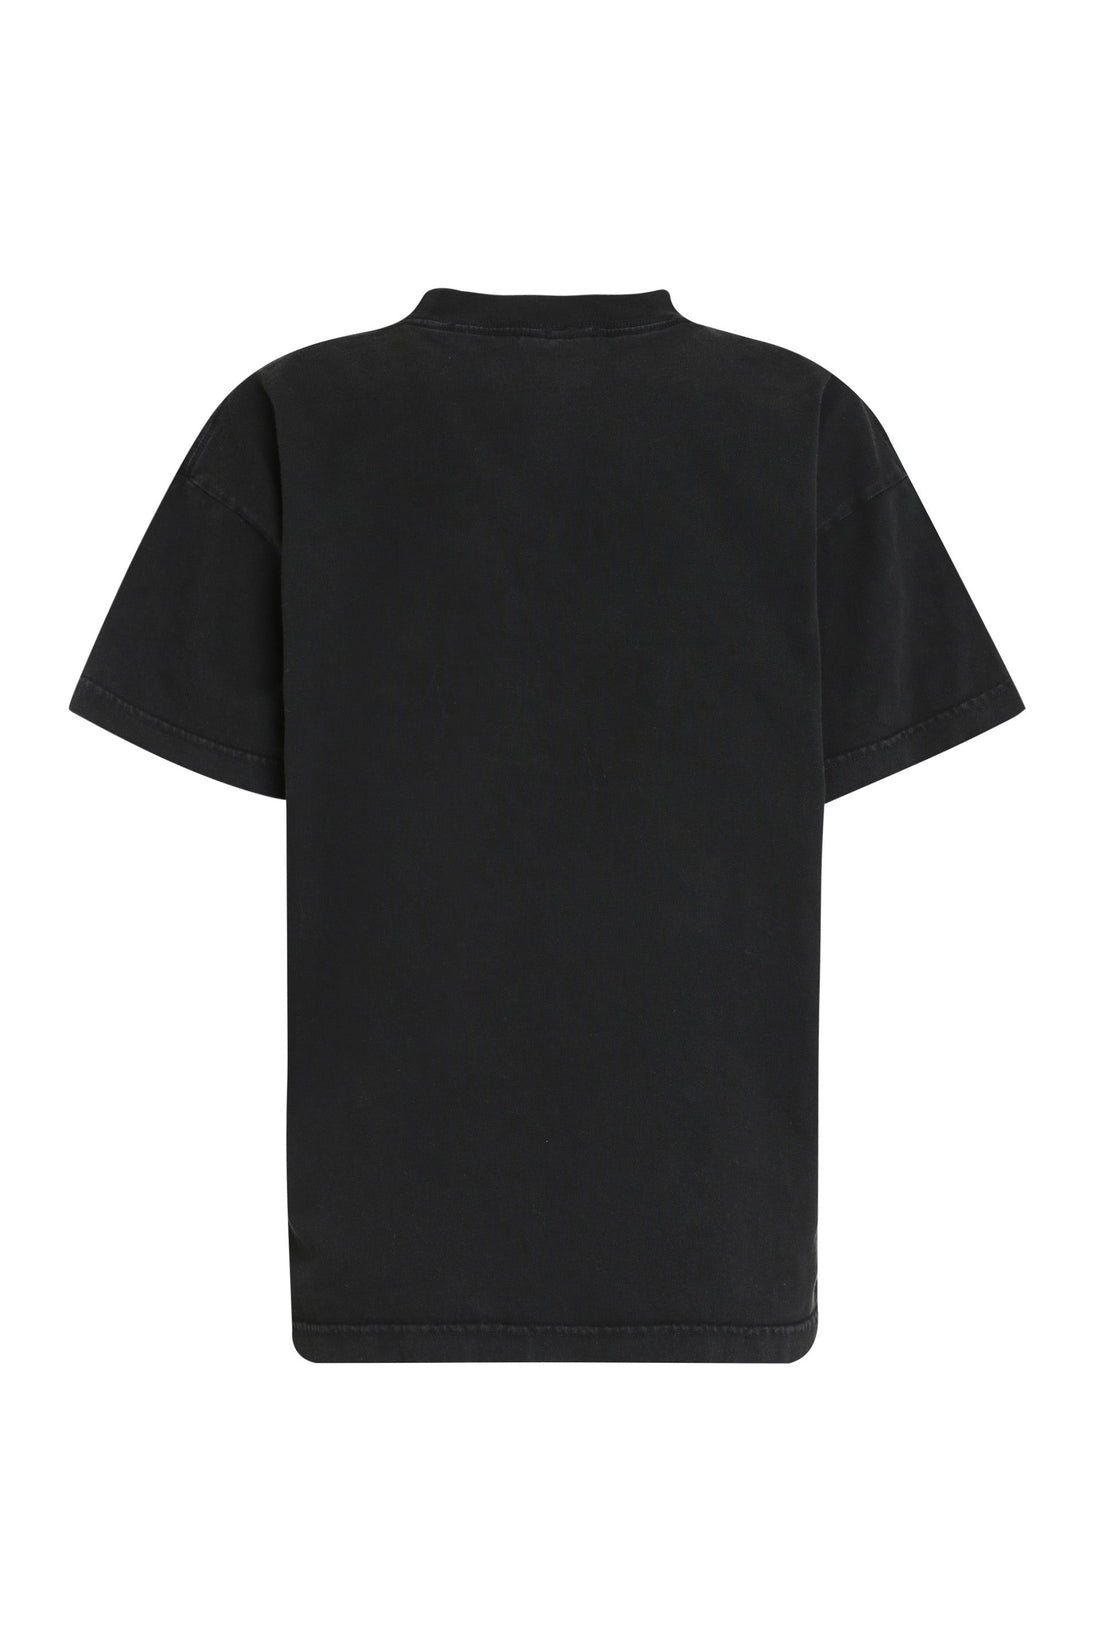 Balenciaga-OUTLET-SALE-Logo cotton t-shirt-ARCHIVIST